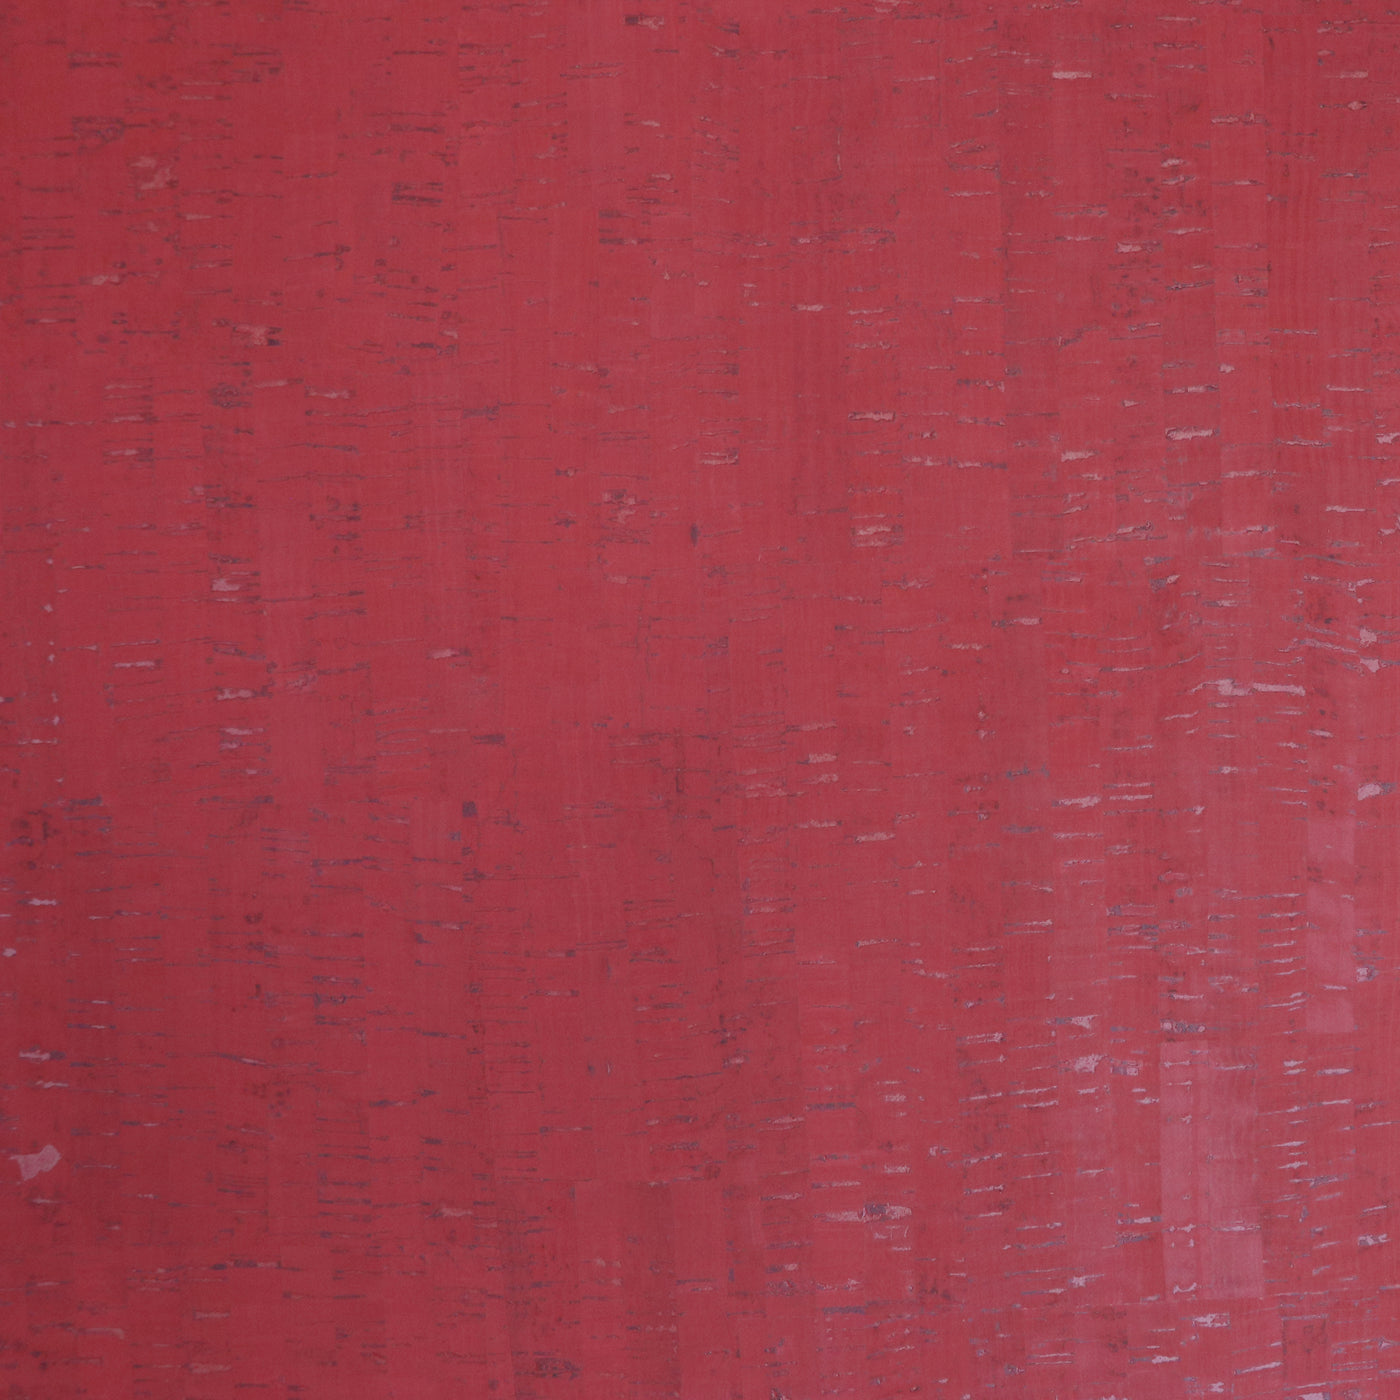 Corte empaquetado de 1/2 yarda: tela rústica de corcho rubí